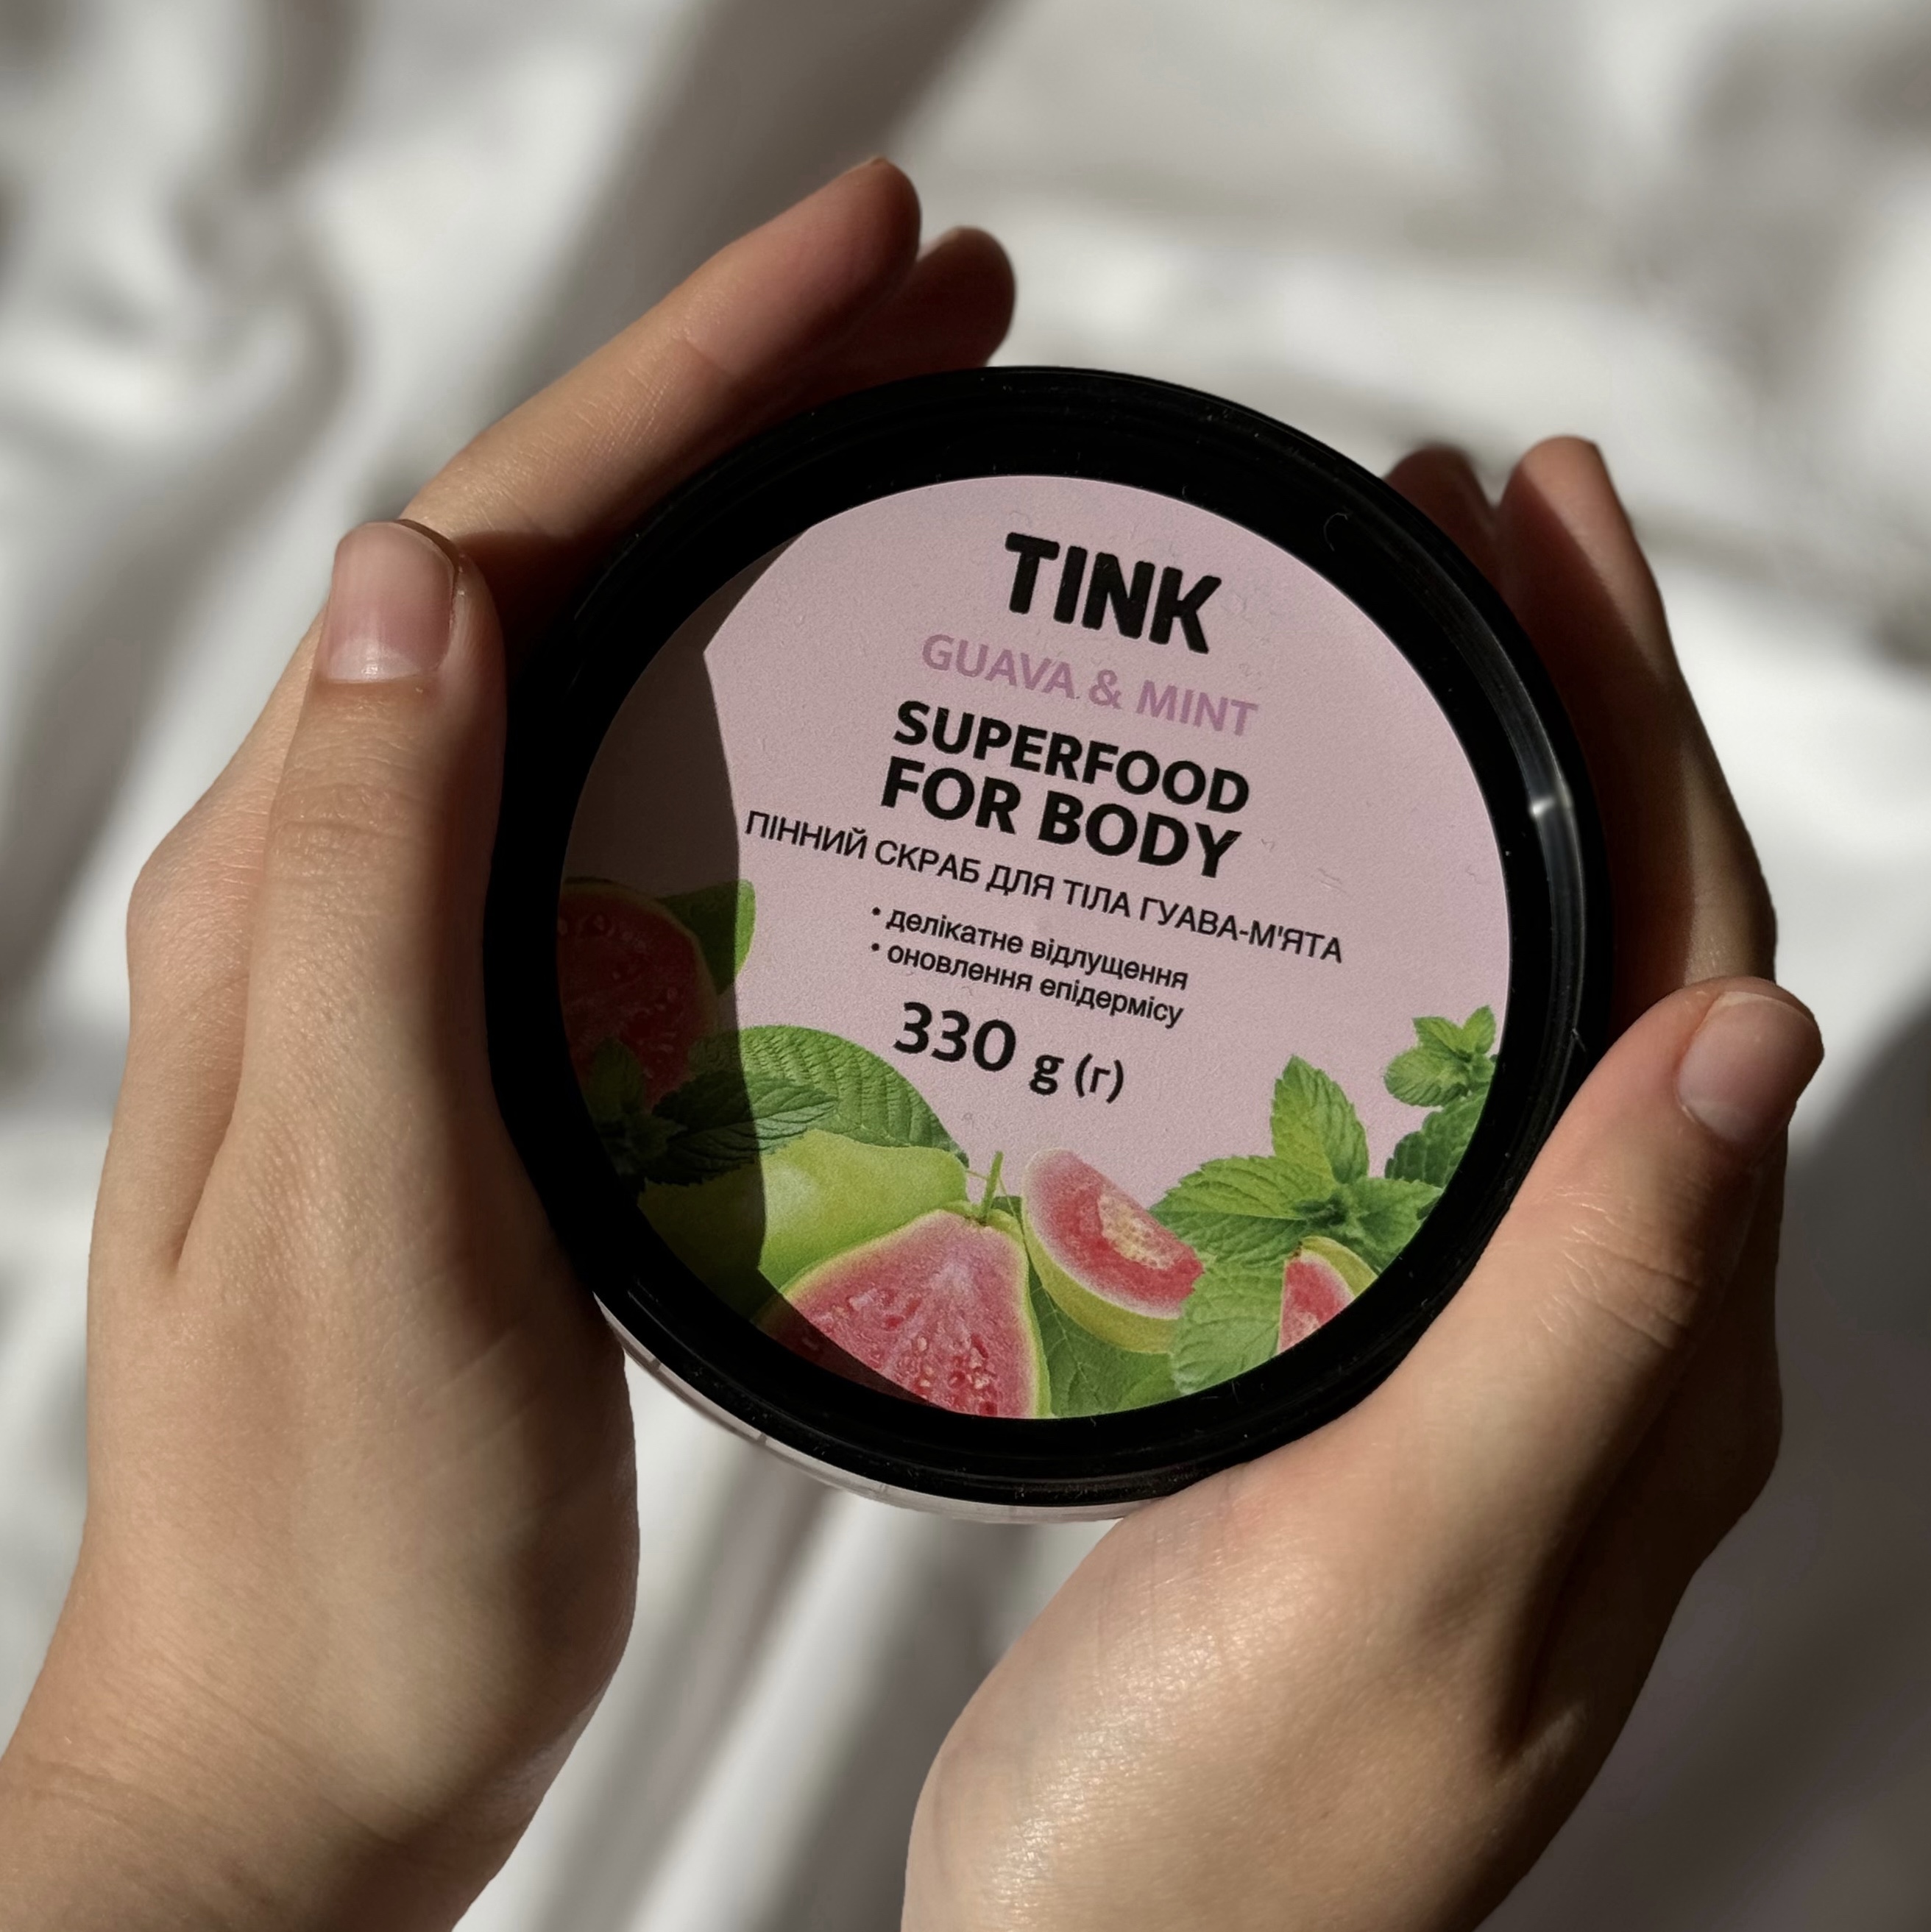 Part 1: Ідеальний дует для догляду за шкірою від Tink Superfood For Body